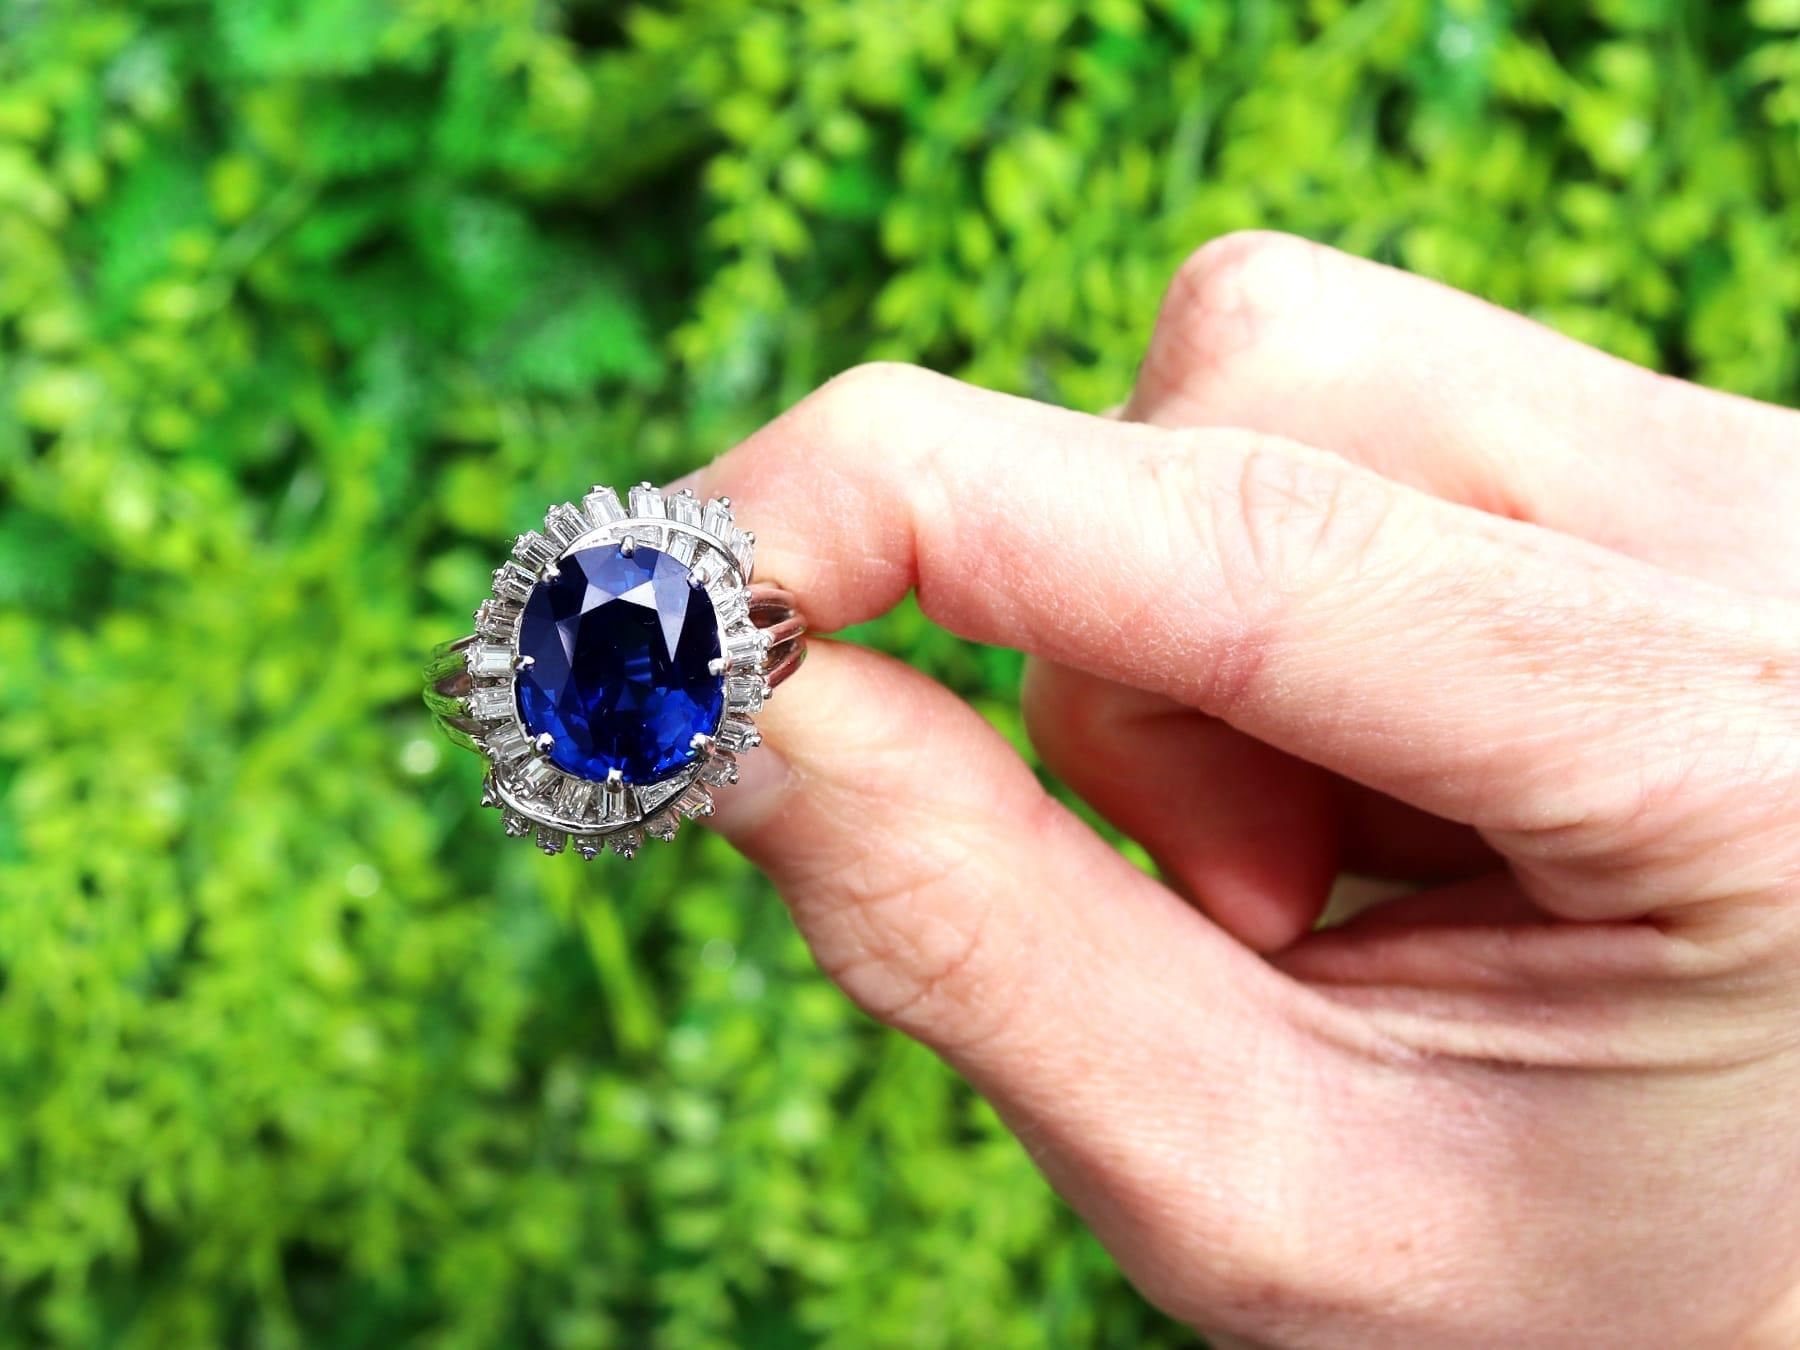 Ein atemberaubender Vintage-Ring aus Platin mit 7,93 Karat Saphir und 1,95 Karat Diamant; Teil unserer vielfältigen Vintage- und Nachlass-Schmuckkollektionen

Dieser atemberaubende, edle und beeindruckende Vintage-Ring mit Saphiren und Diamanten ist